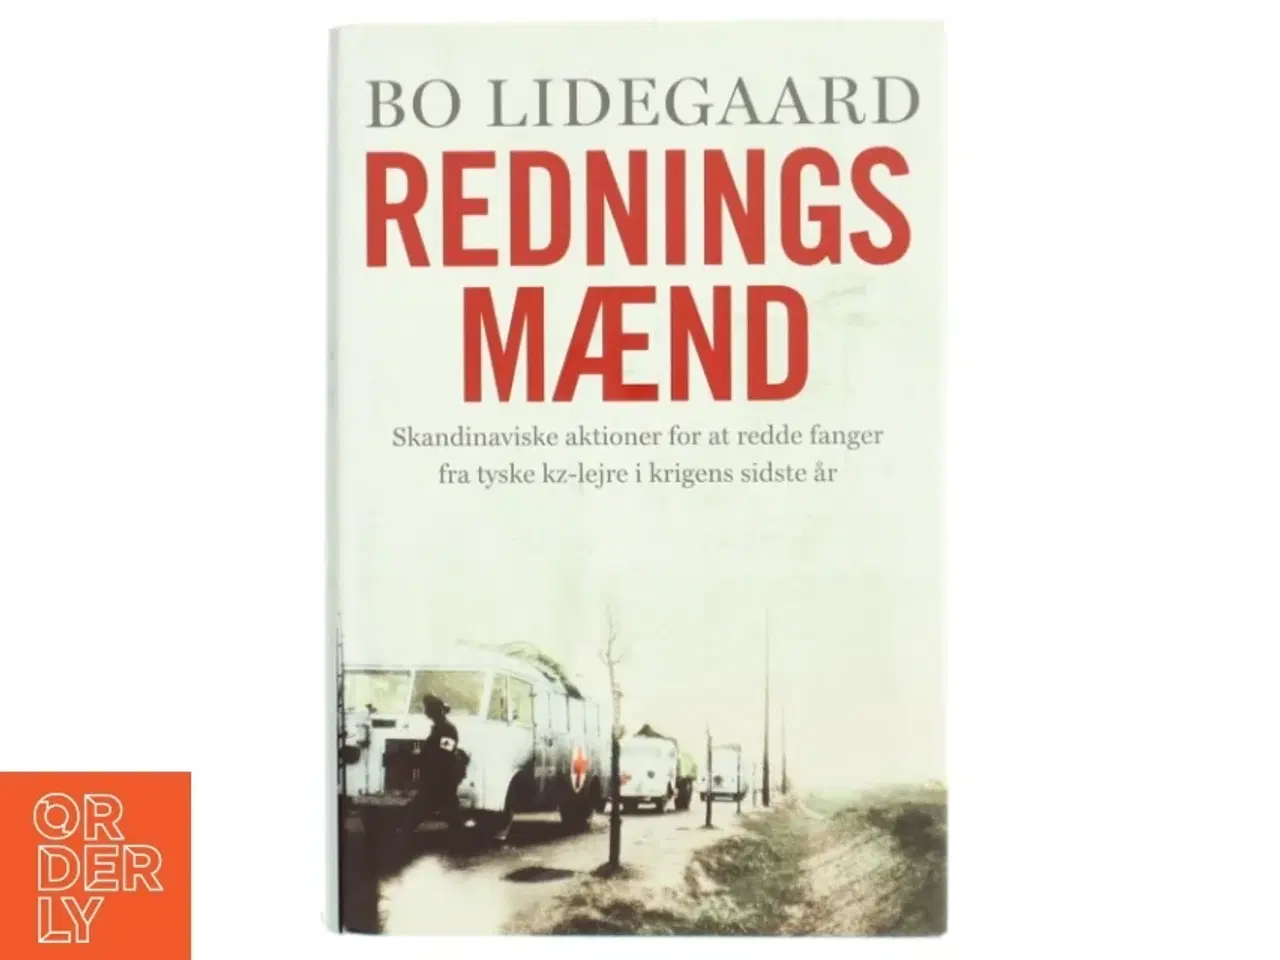 Billede 1 - 'Redningsmænd' af Bo Lidegaard (bog)